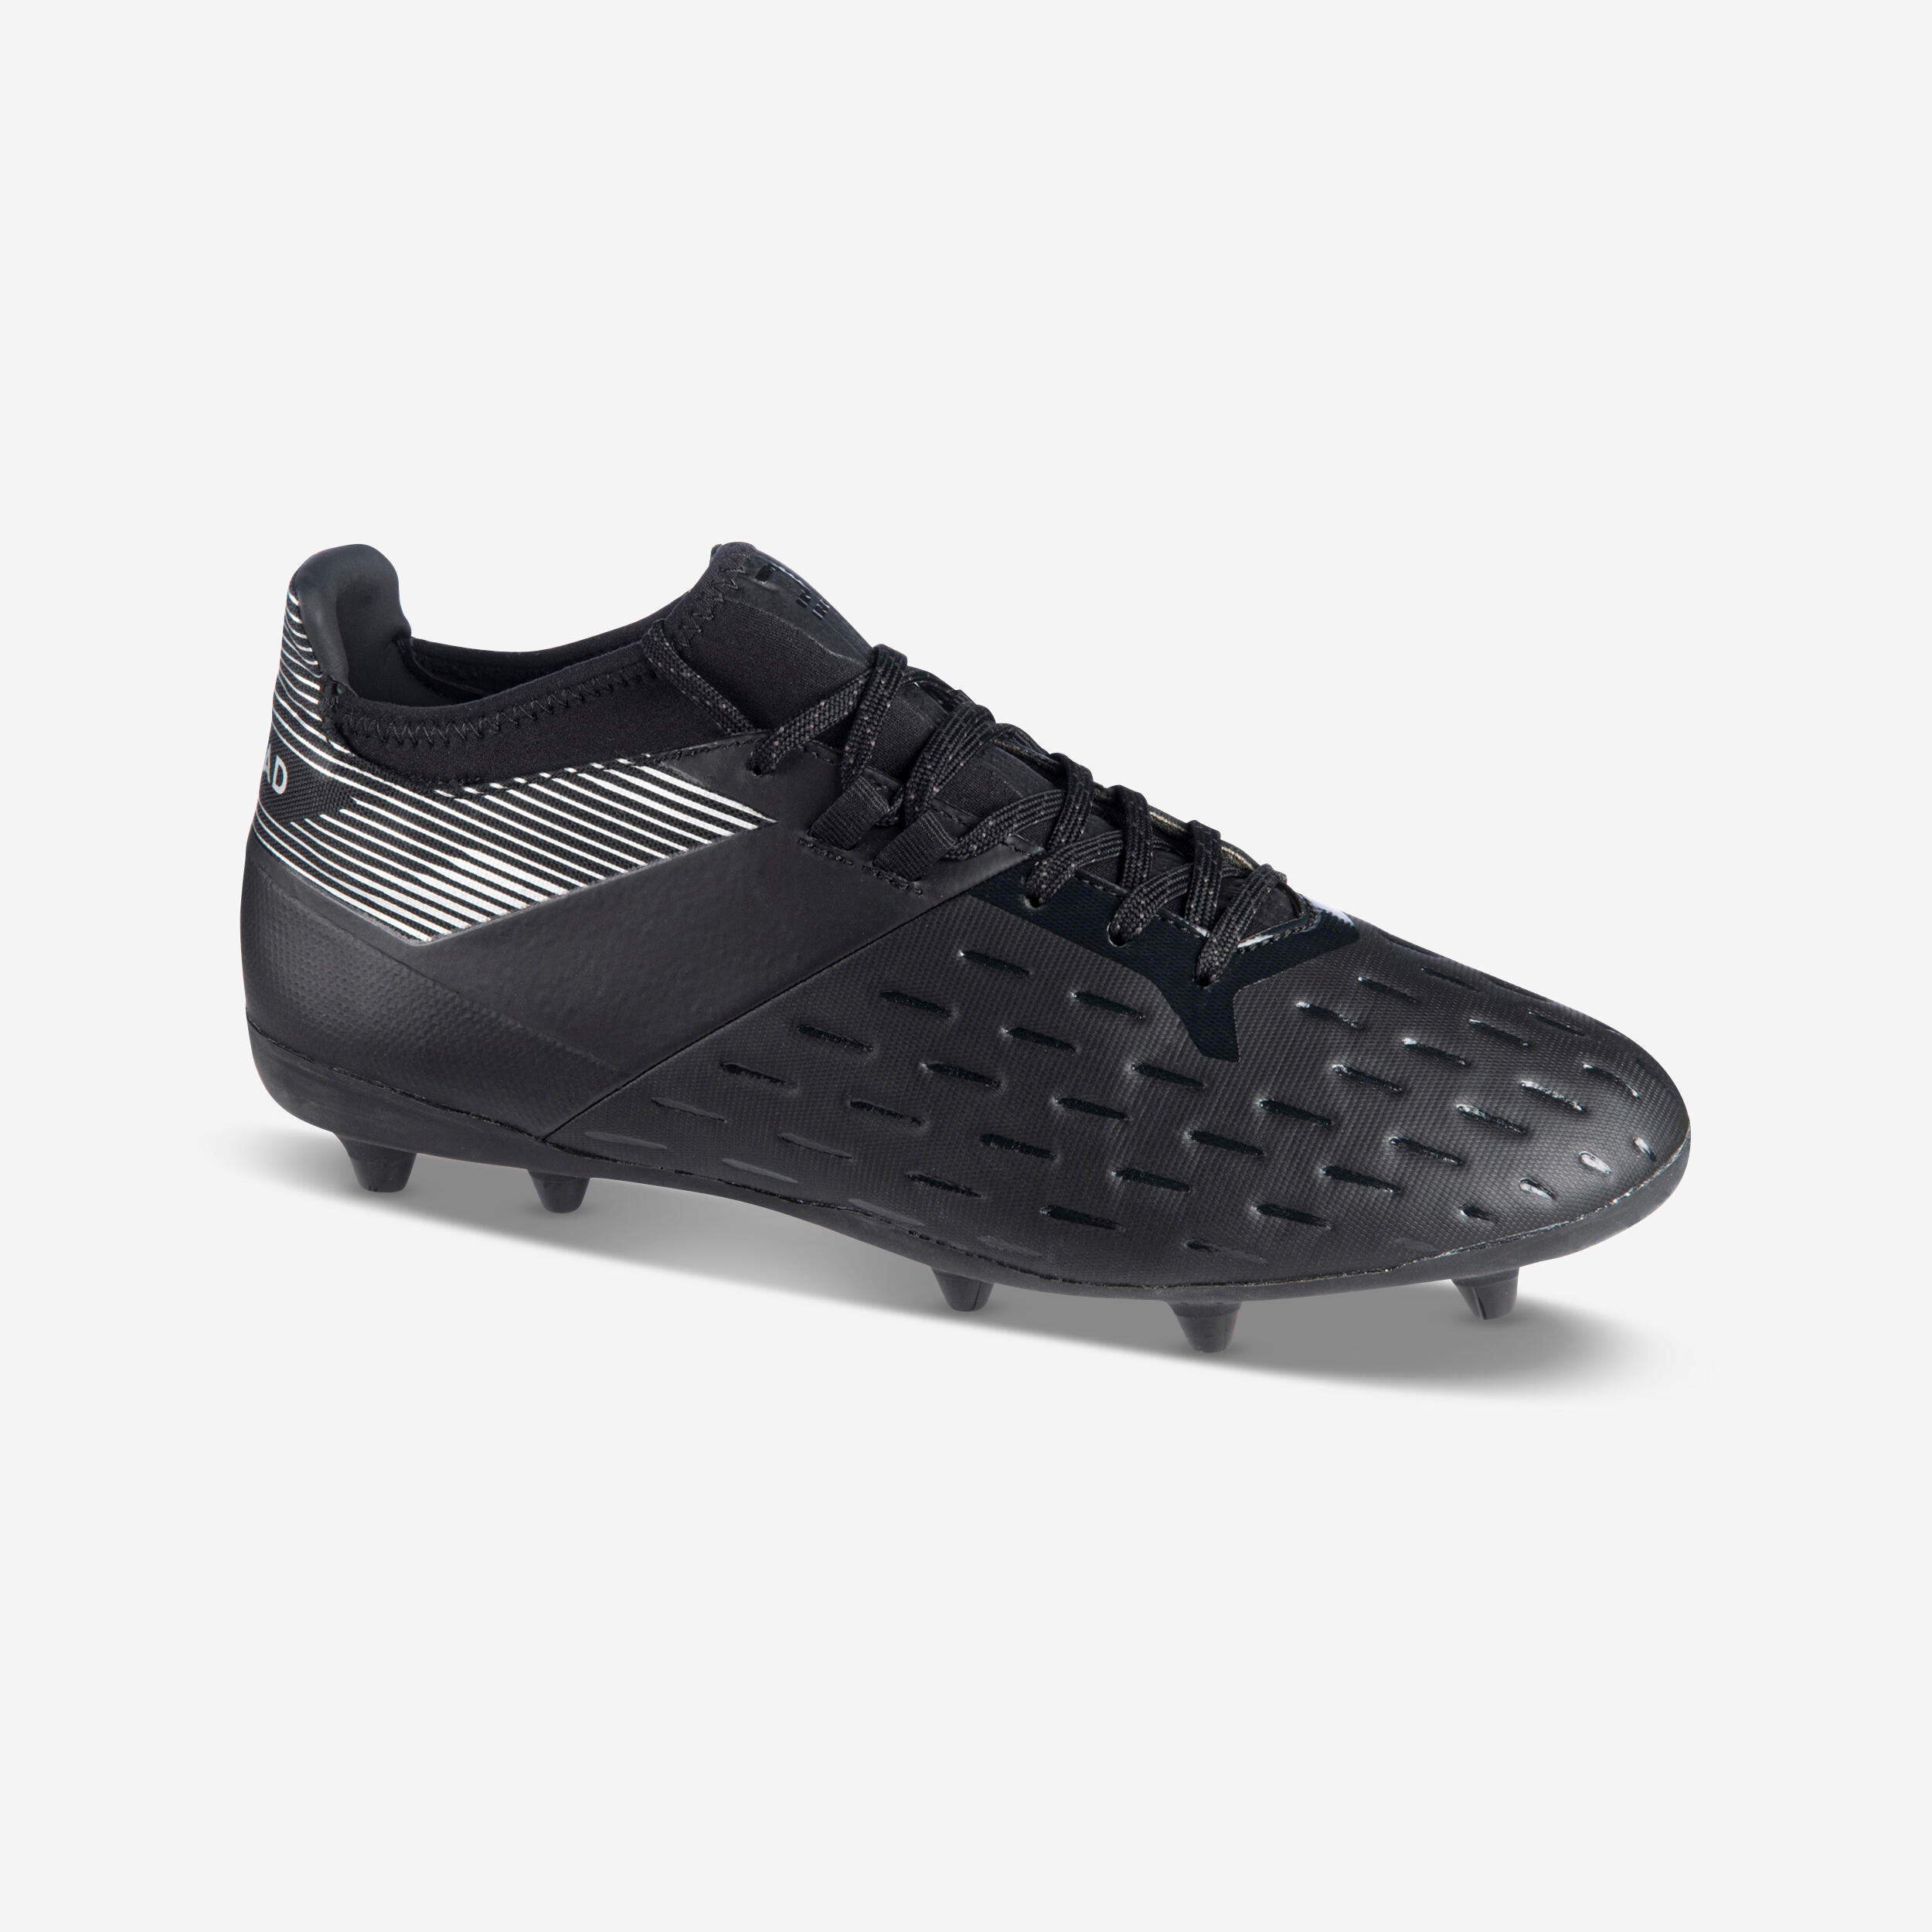 chaussures de rugby moulées terrain sec homme - rugby advance 500 fg noir gris - offload